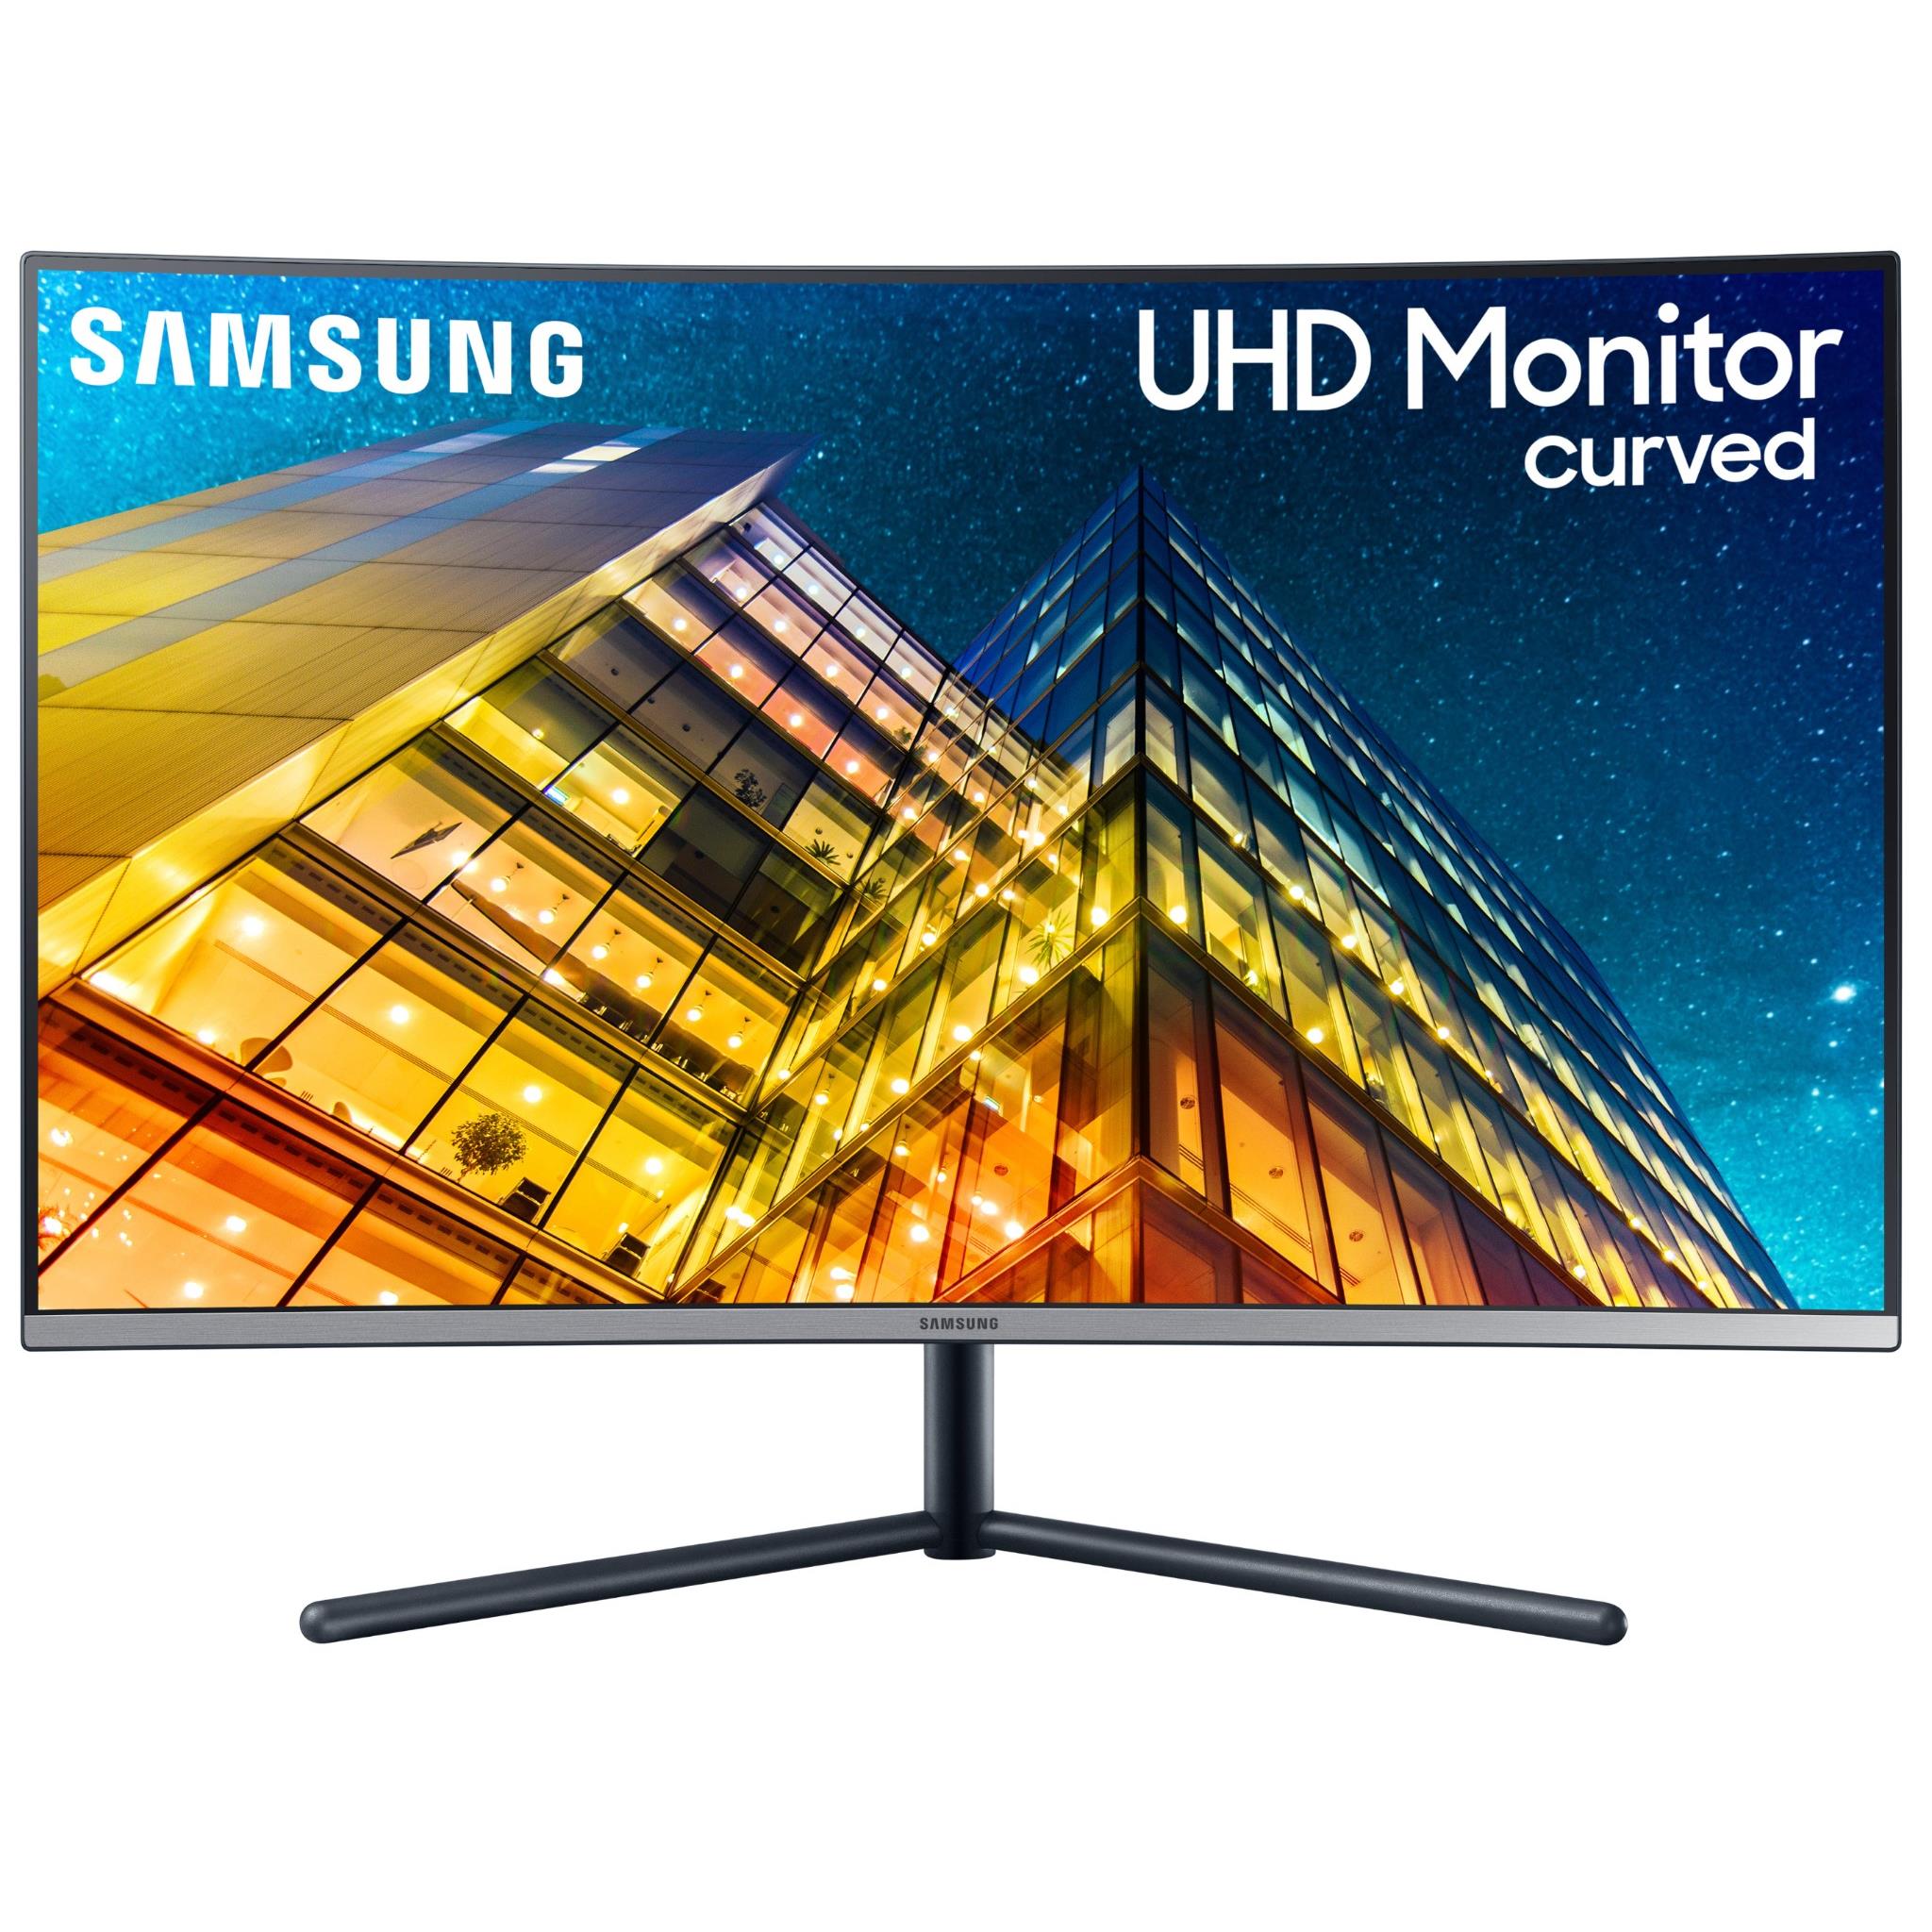 Samsung 32" Ultra HD Curved Monitor - JB Hi-Fi